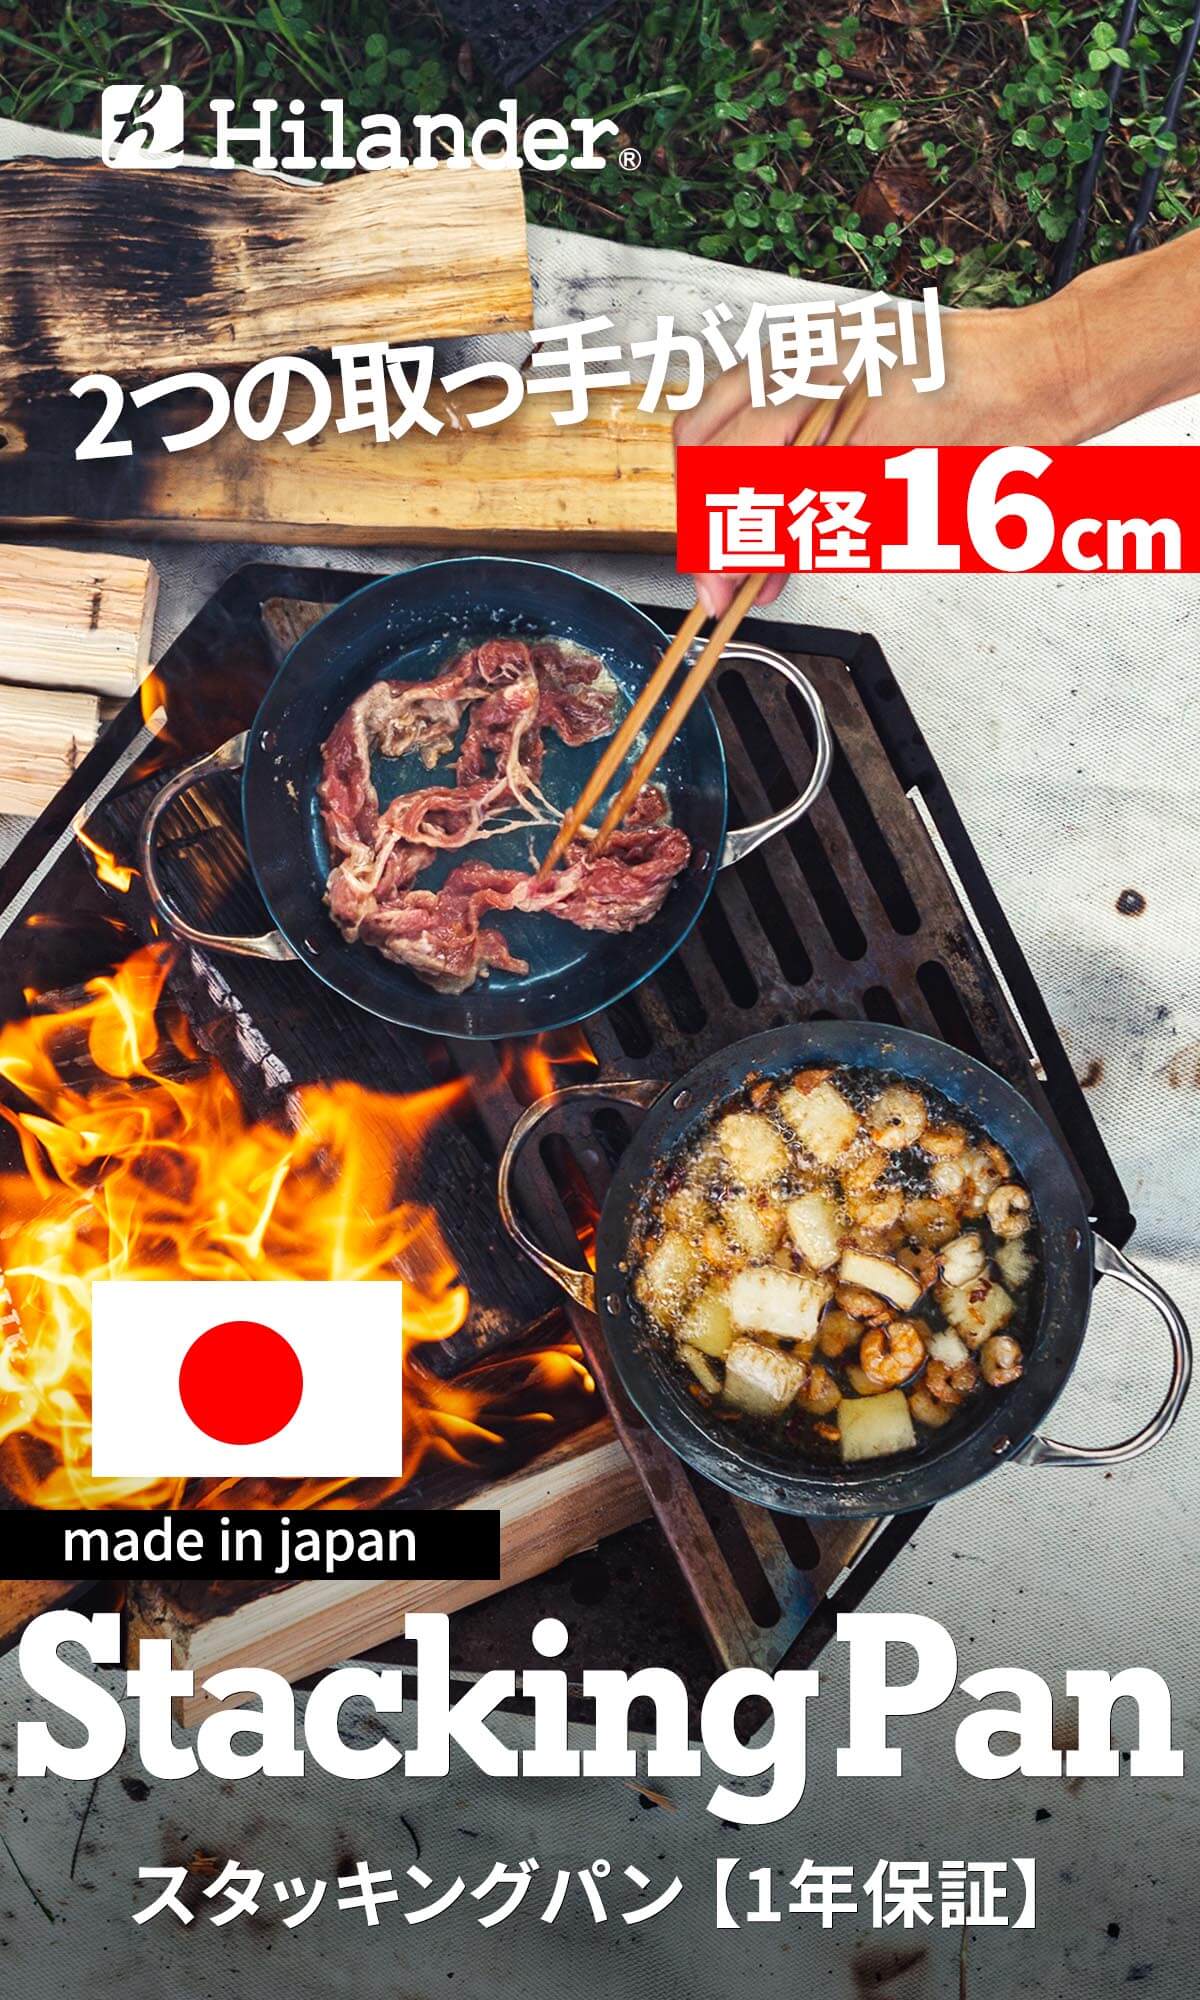 日本の職人が丁寧に造りあげた品質の高いフライパン